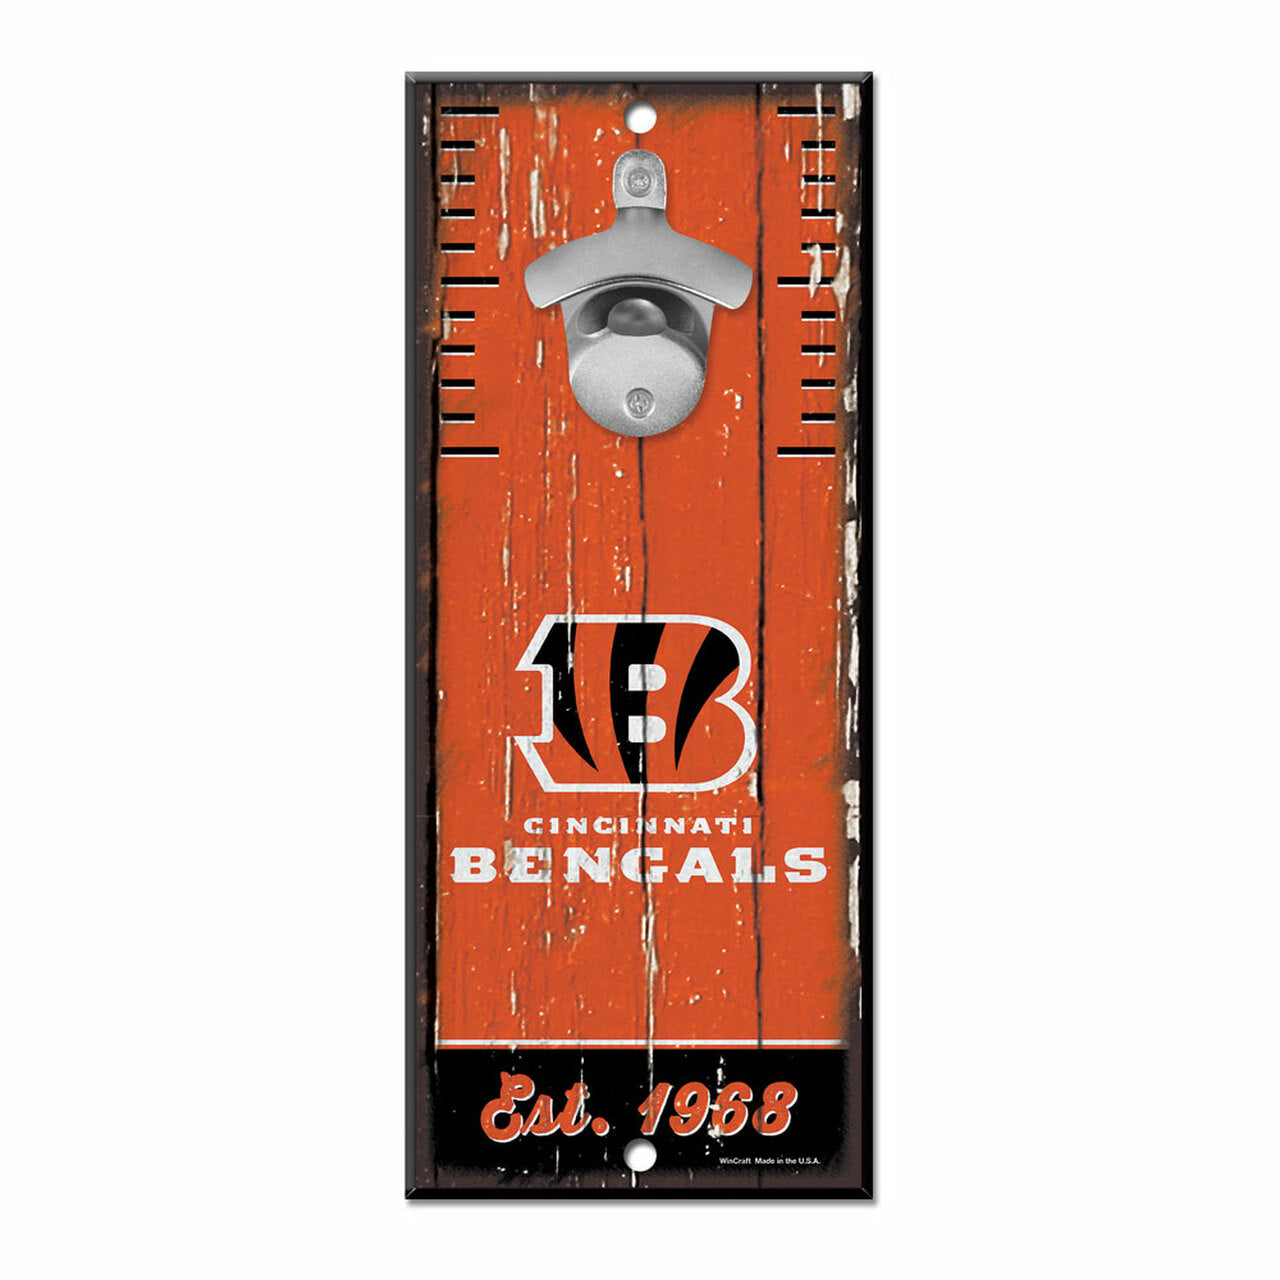 Cincinnati Bengals 5" x 11" Bottle Opener Wood Sign by Wincraft